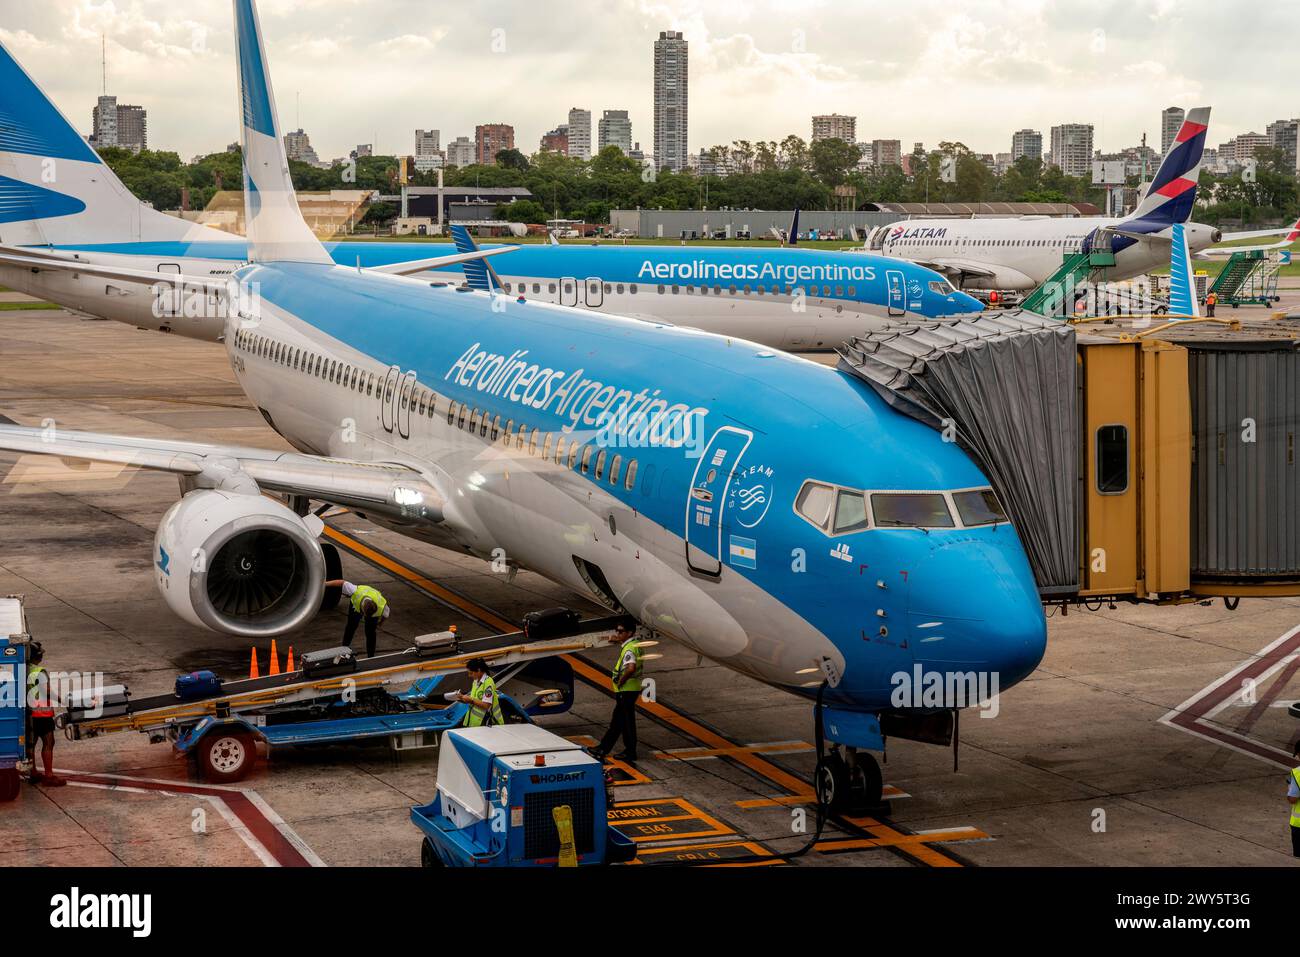 Aerolineas Argentina avions au sol à l'aéroport Jorge Newberry, Buenos Aires, Argentine Banque D'Images